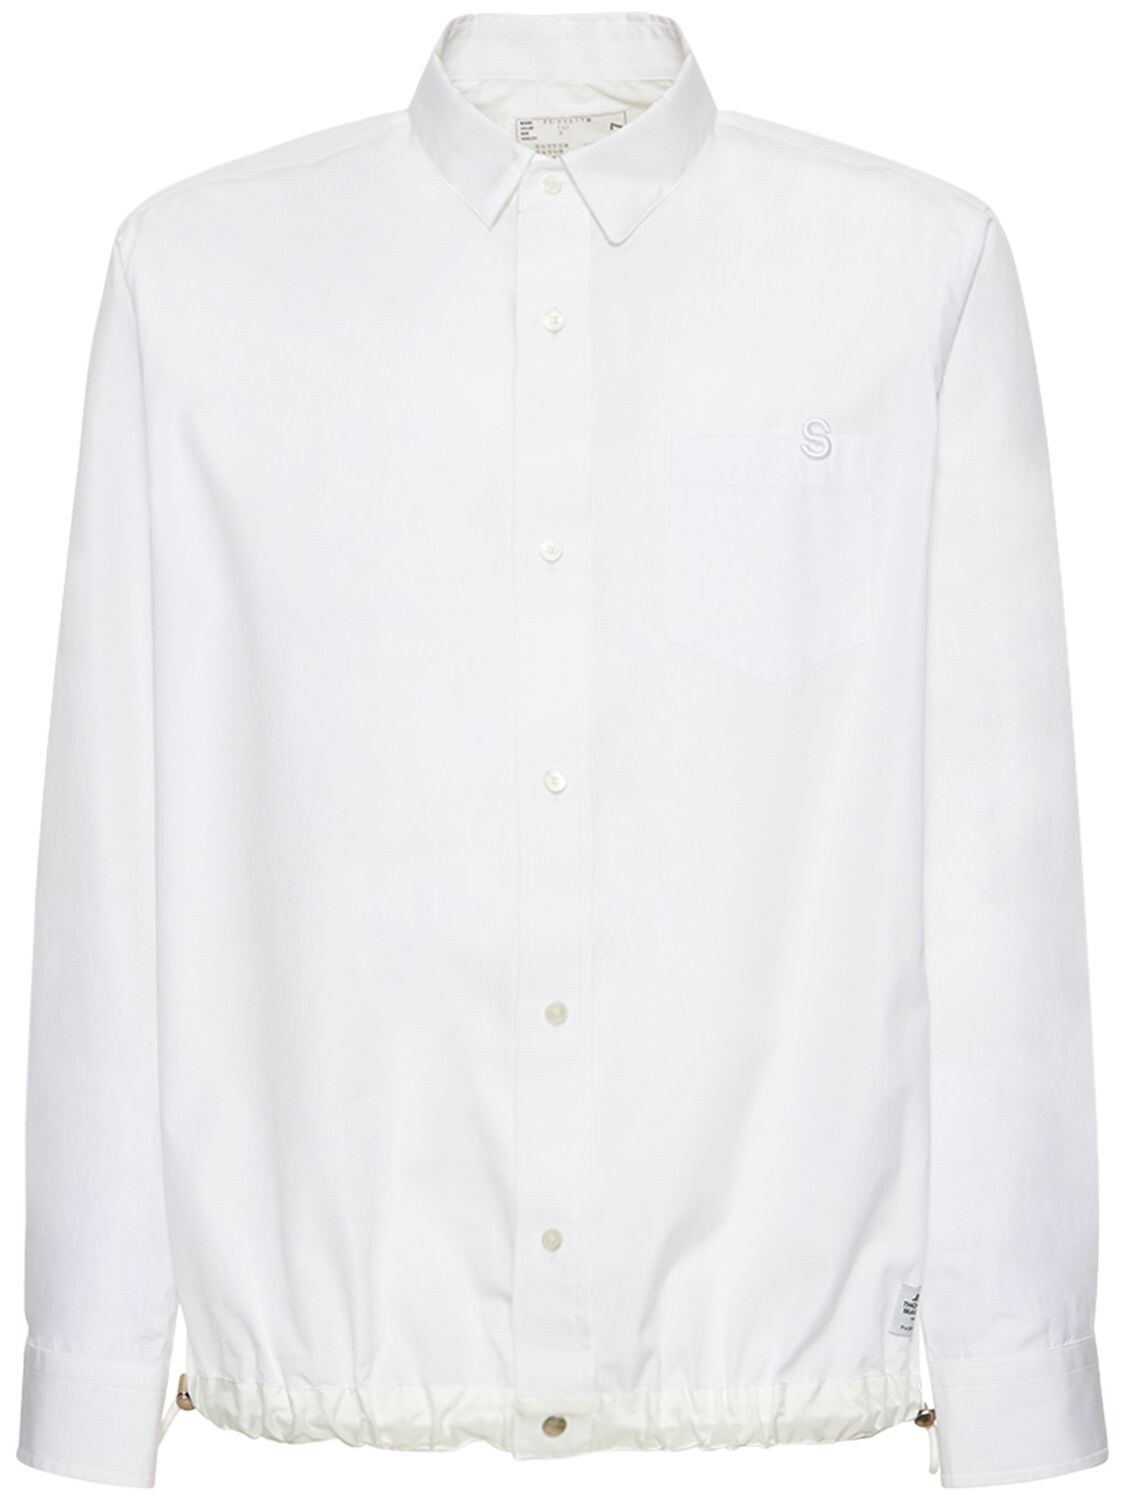 Thomas Mason Cotton Poplin Shirt – MEN > CLOTHING > SHIRTS